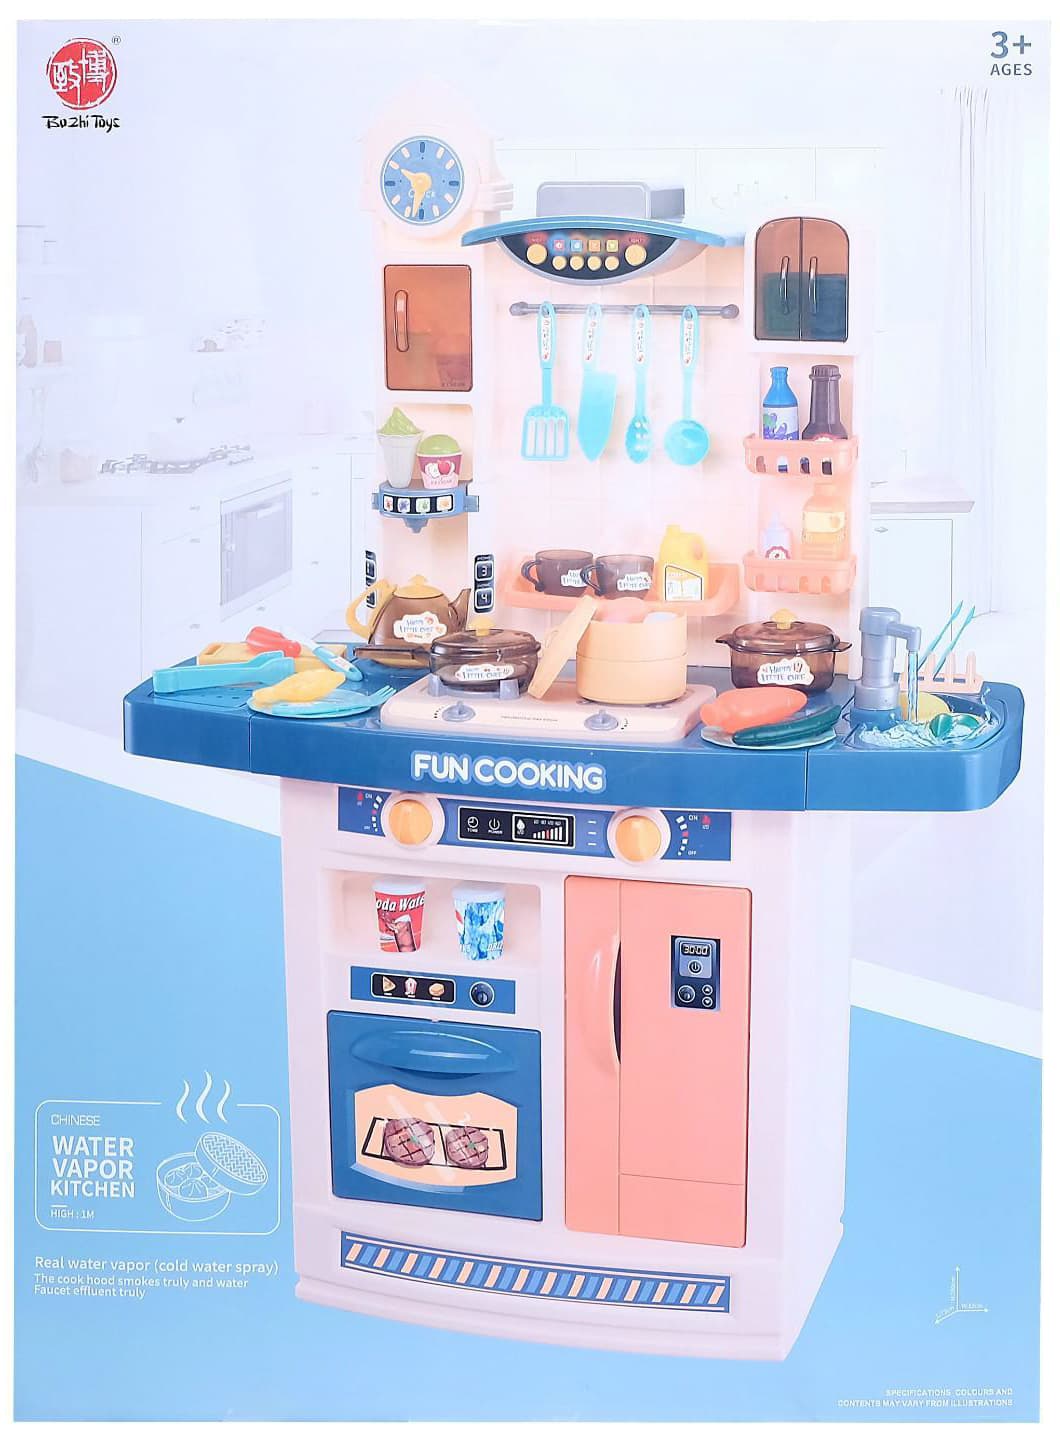 Детская игровая интерактивная кухня «Кухня шеф-повара» 50 аксессуаров, высота 100 см. 998A Fun Cooking с аксессуарами, свет, звук, бежит вода из крана